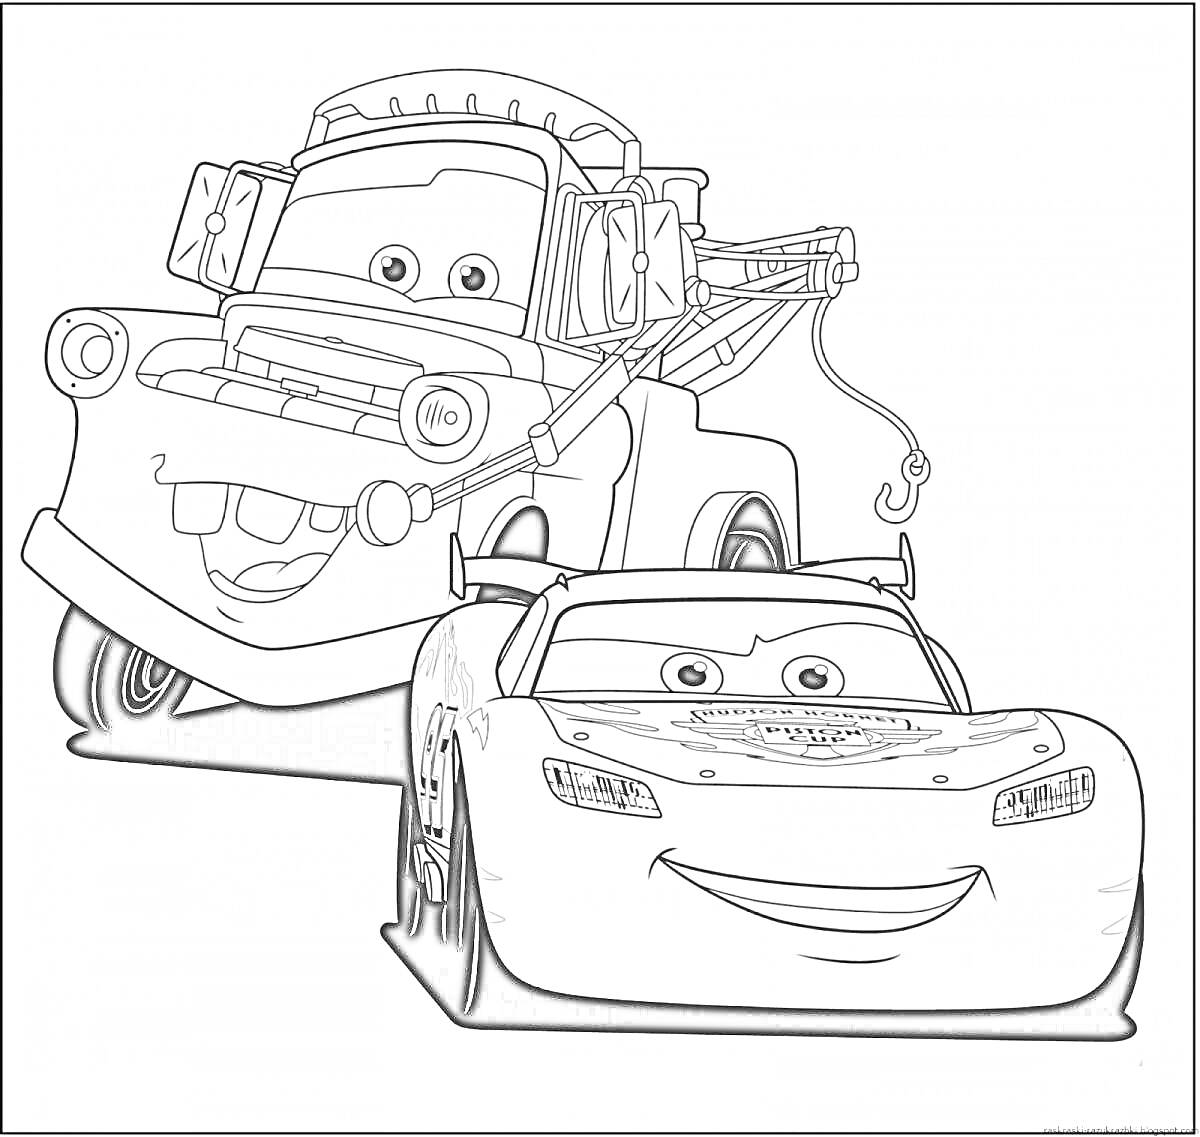 Раскраска с персонажами: эвакуатор и гоночный автомобиль с глазами, улыбками и деталями на капоте